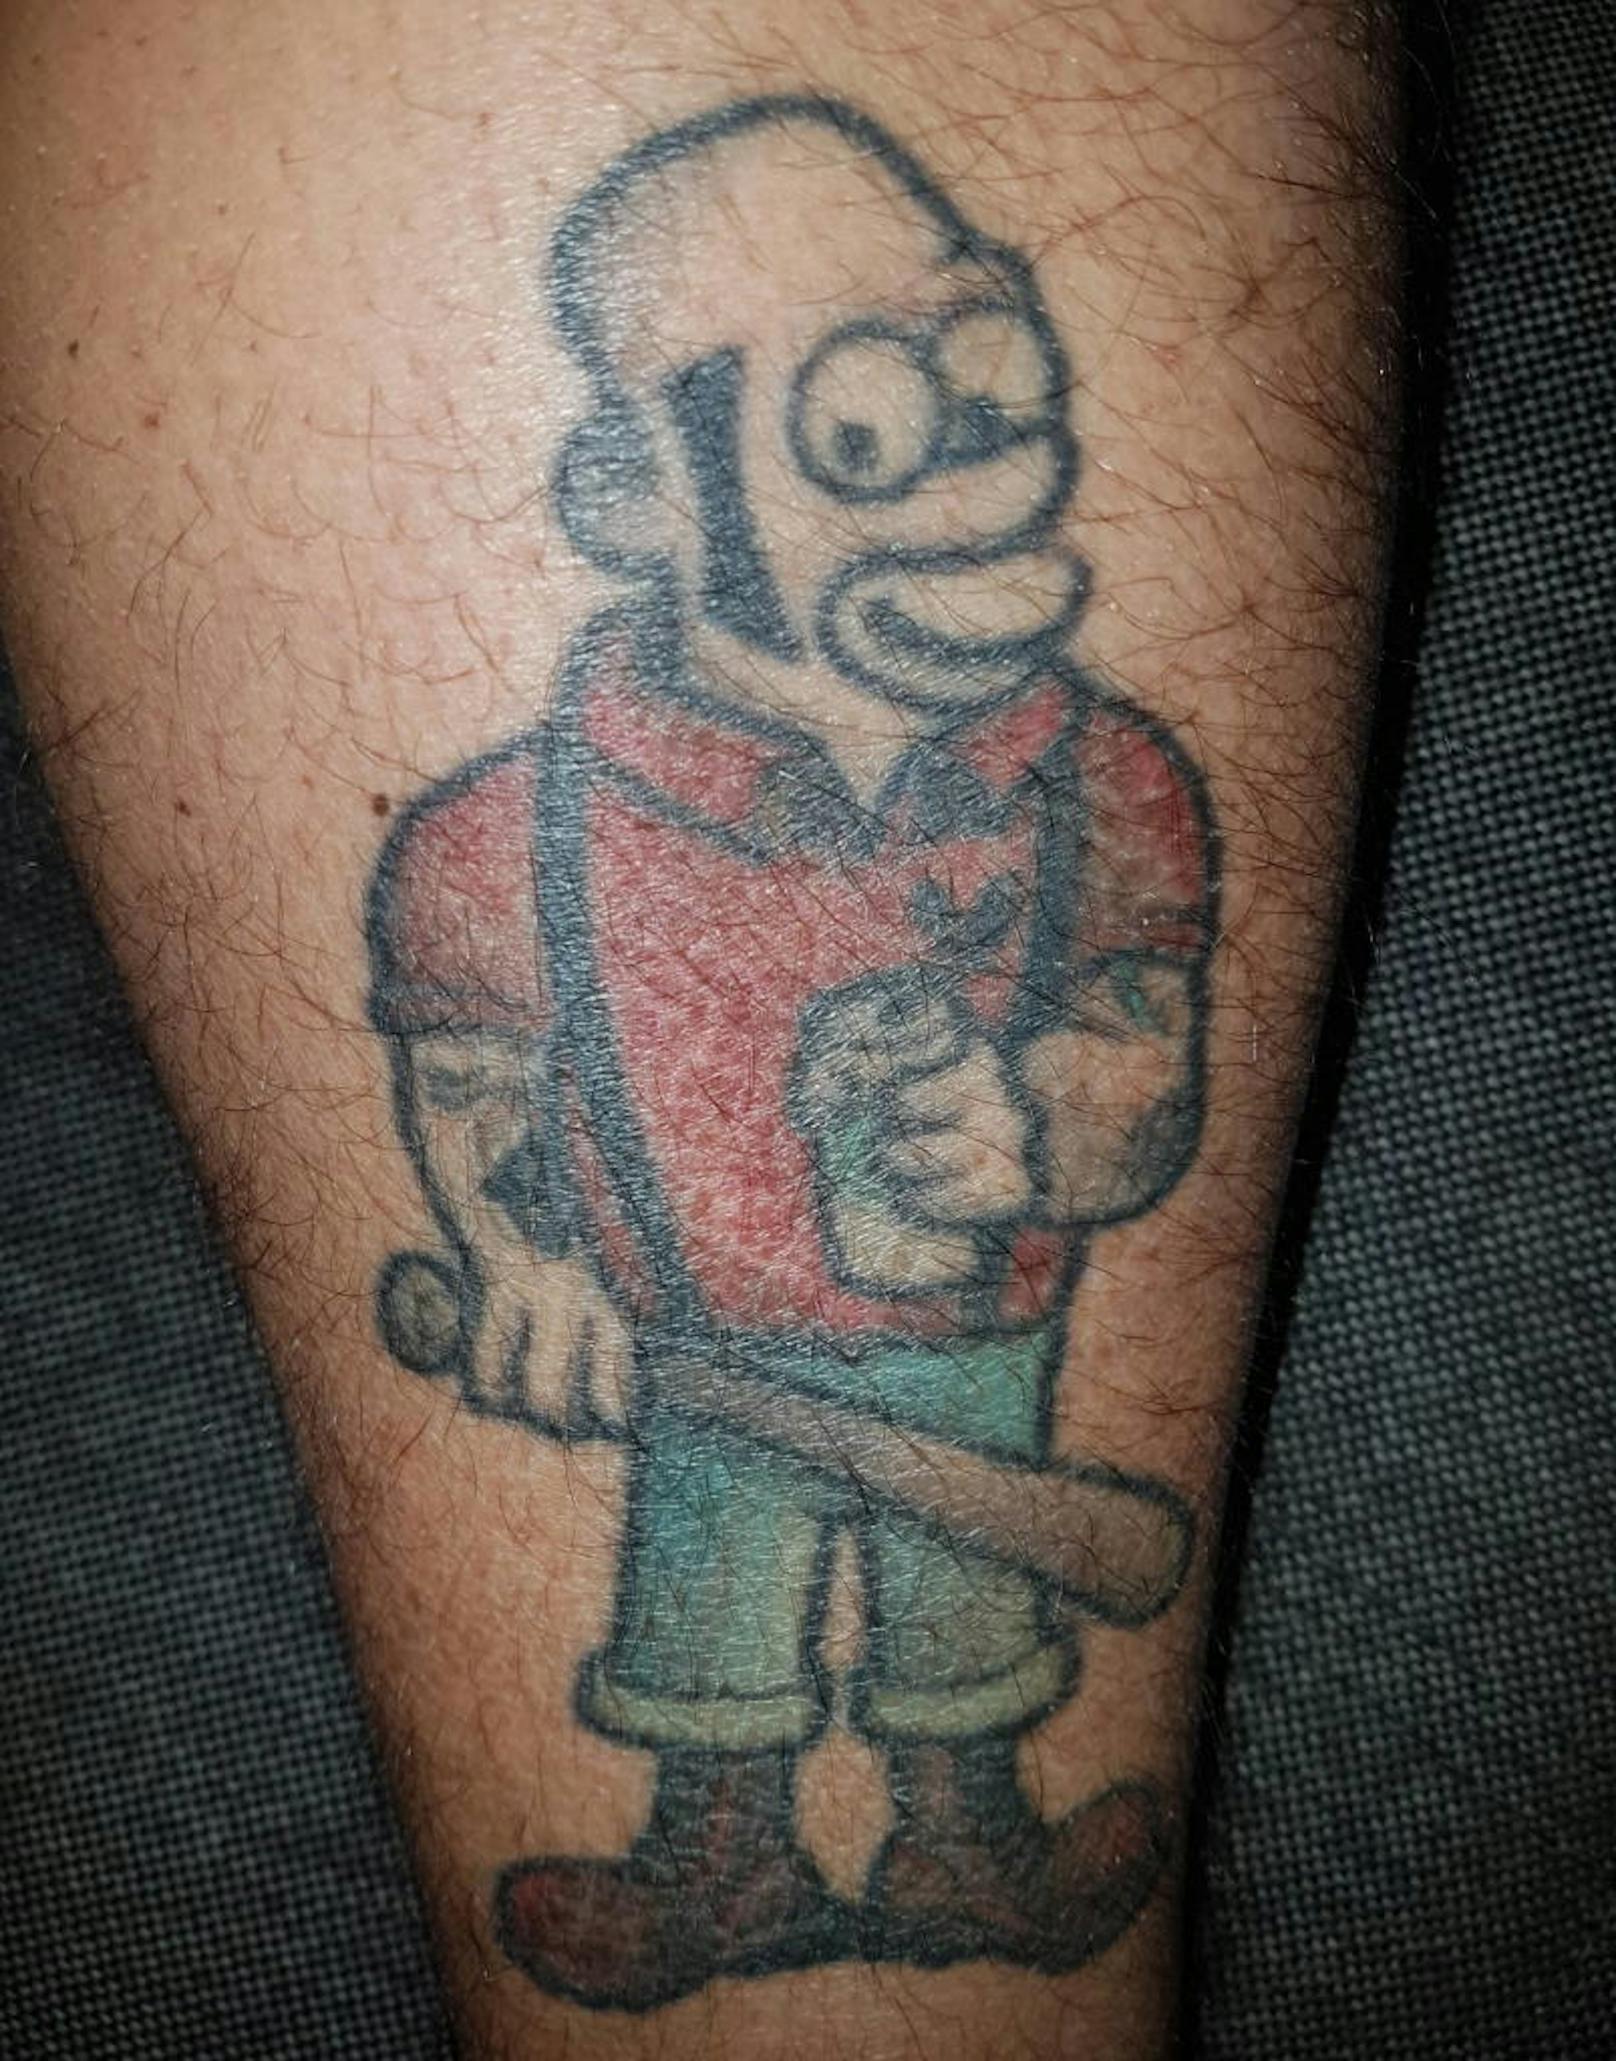 "Der Homer muss weg war mein erstes Tattoo mit 18. Im Sommer ein unangenehmer Blickfang."